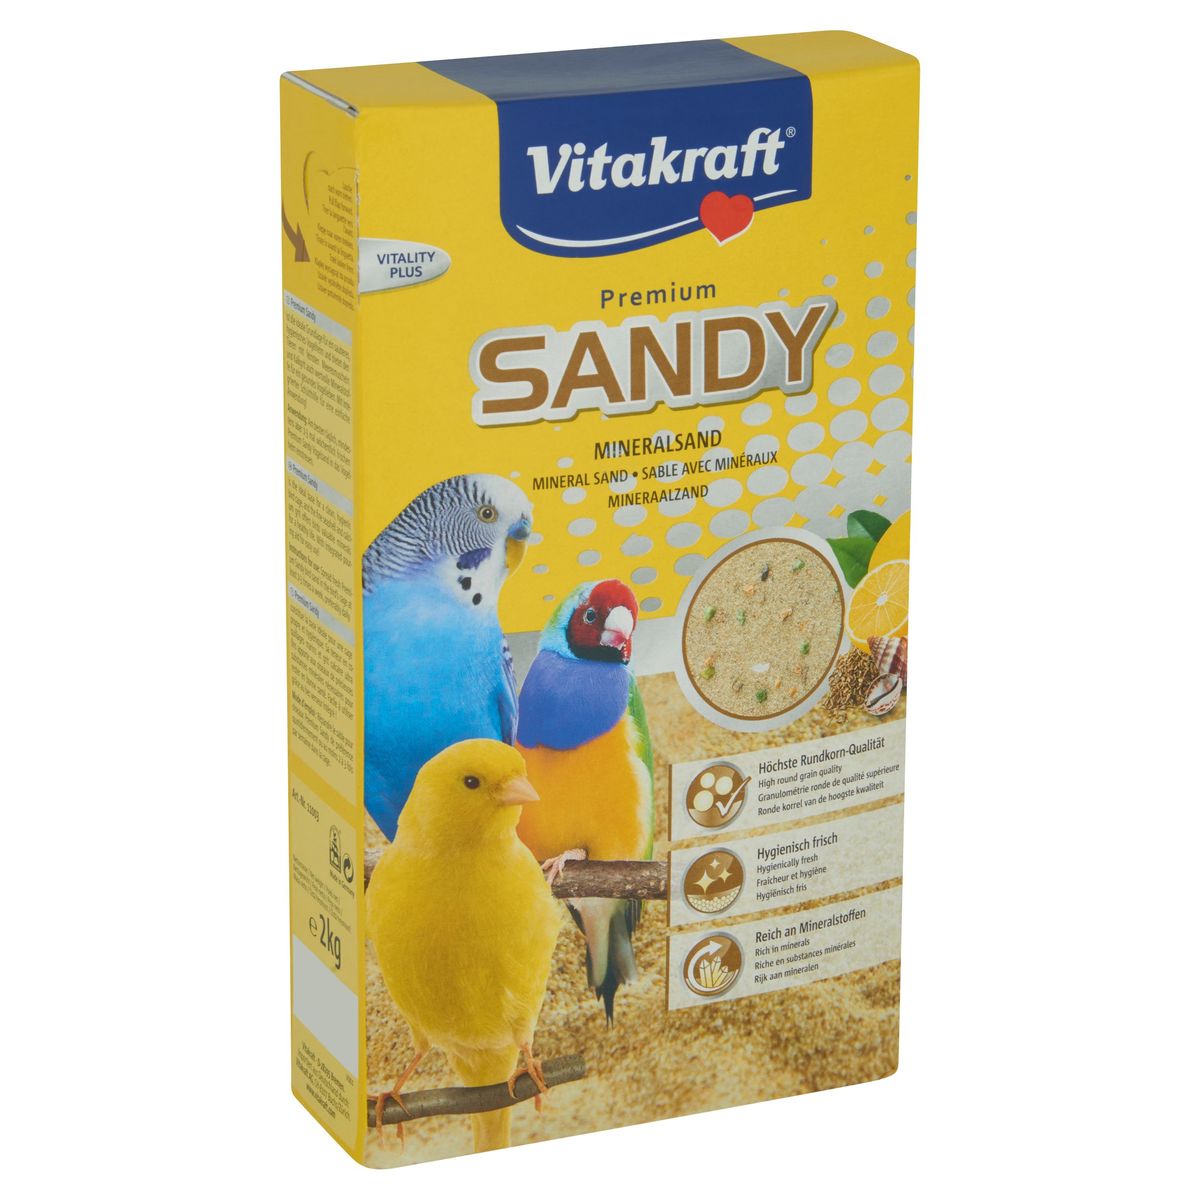 Vitakraft Vitality Plus Premium Sandy Mineraalzand 2 kg